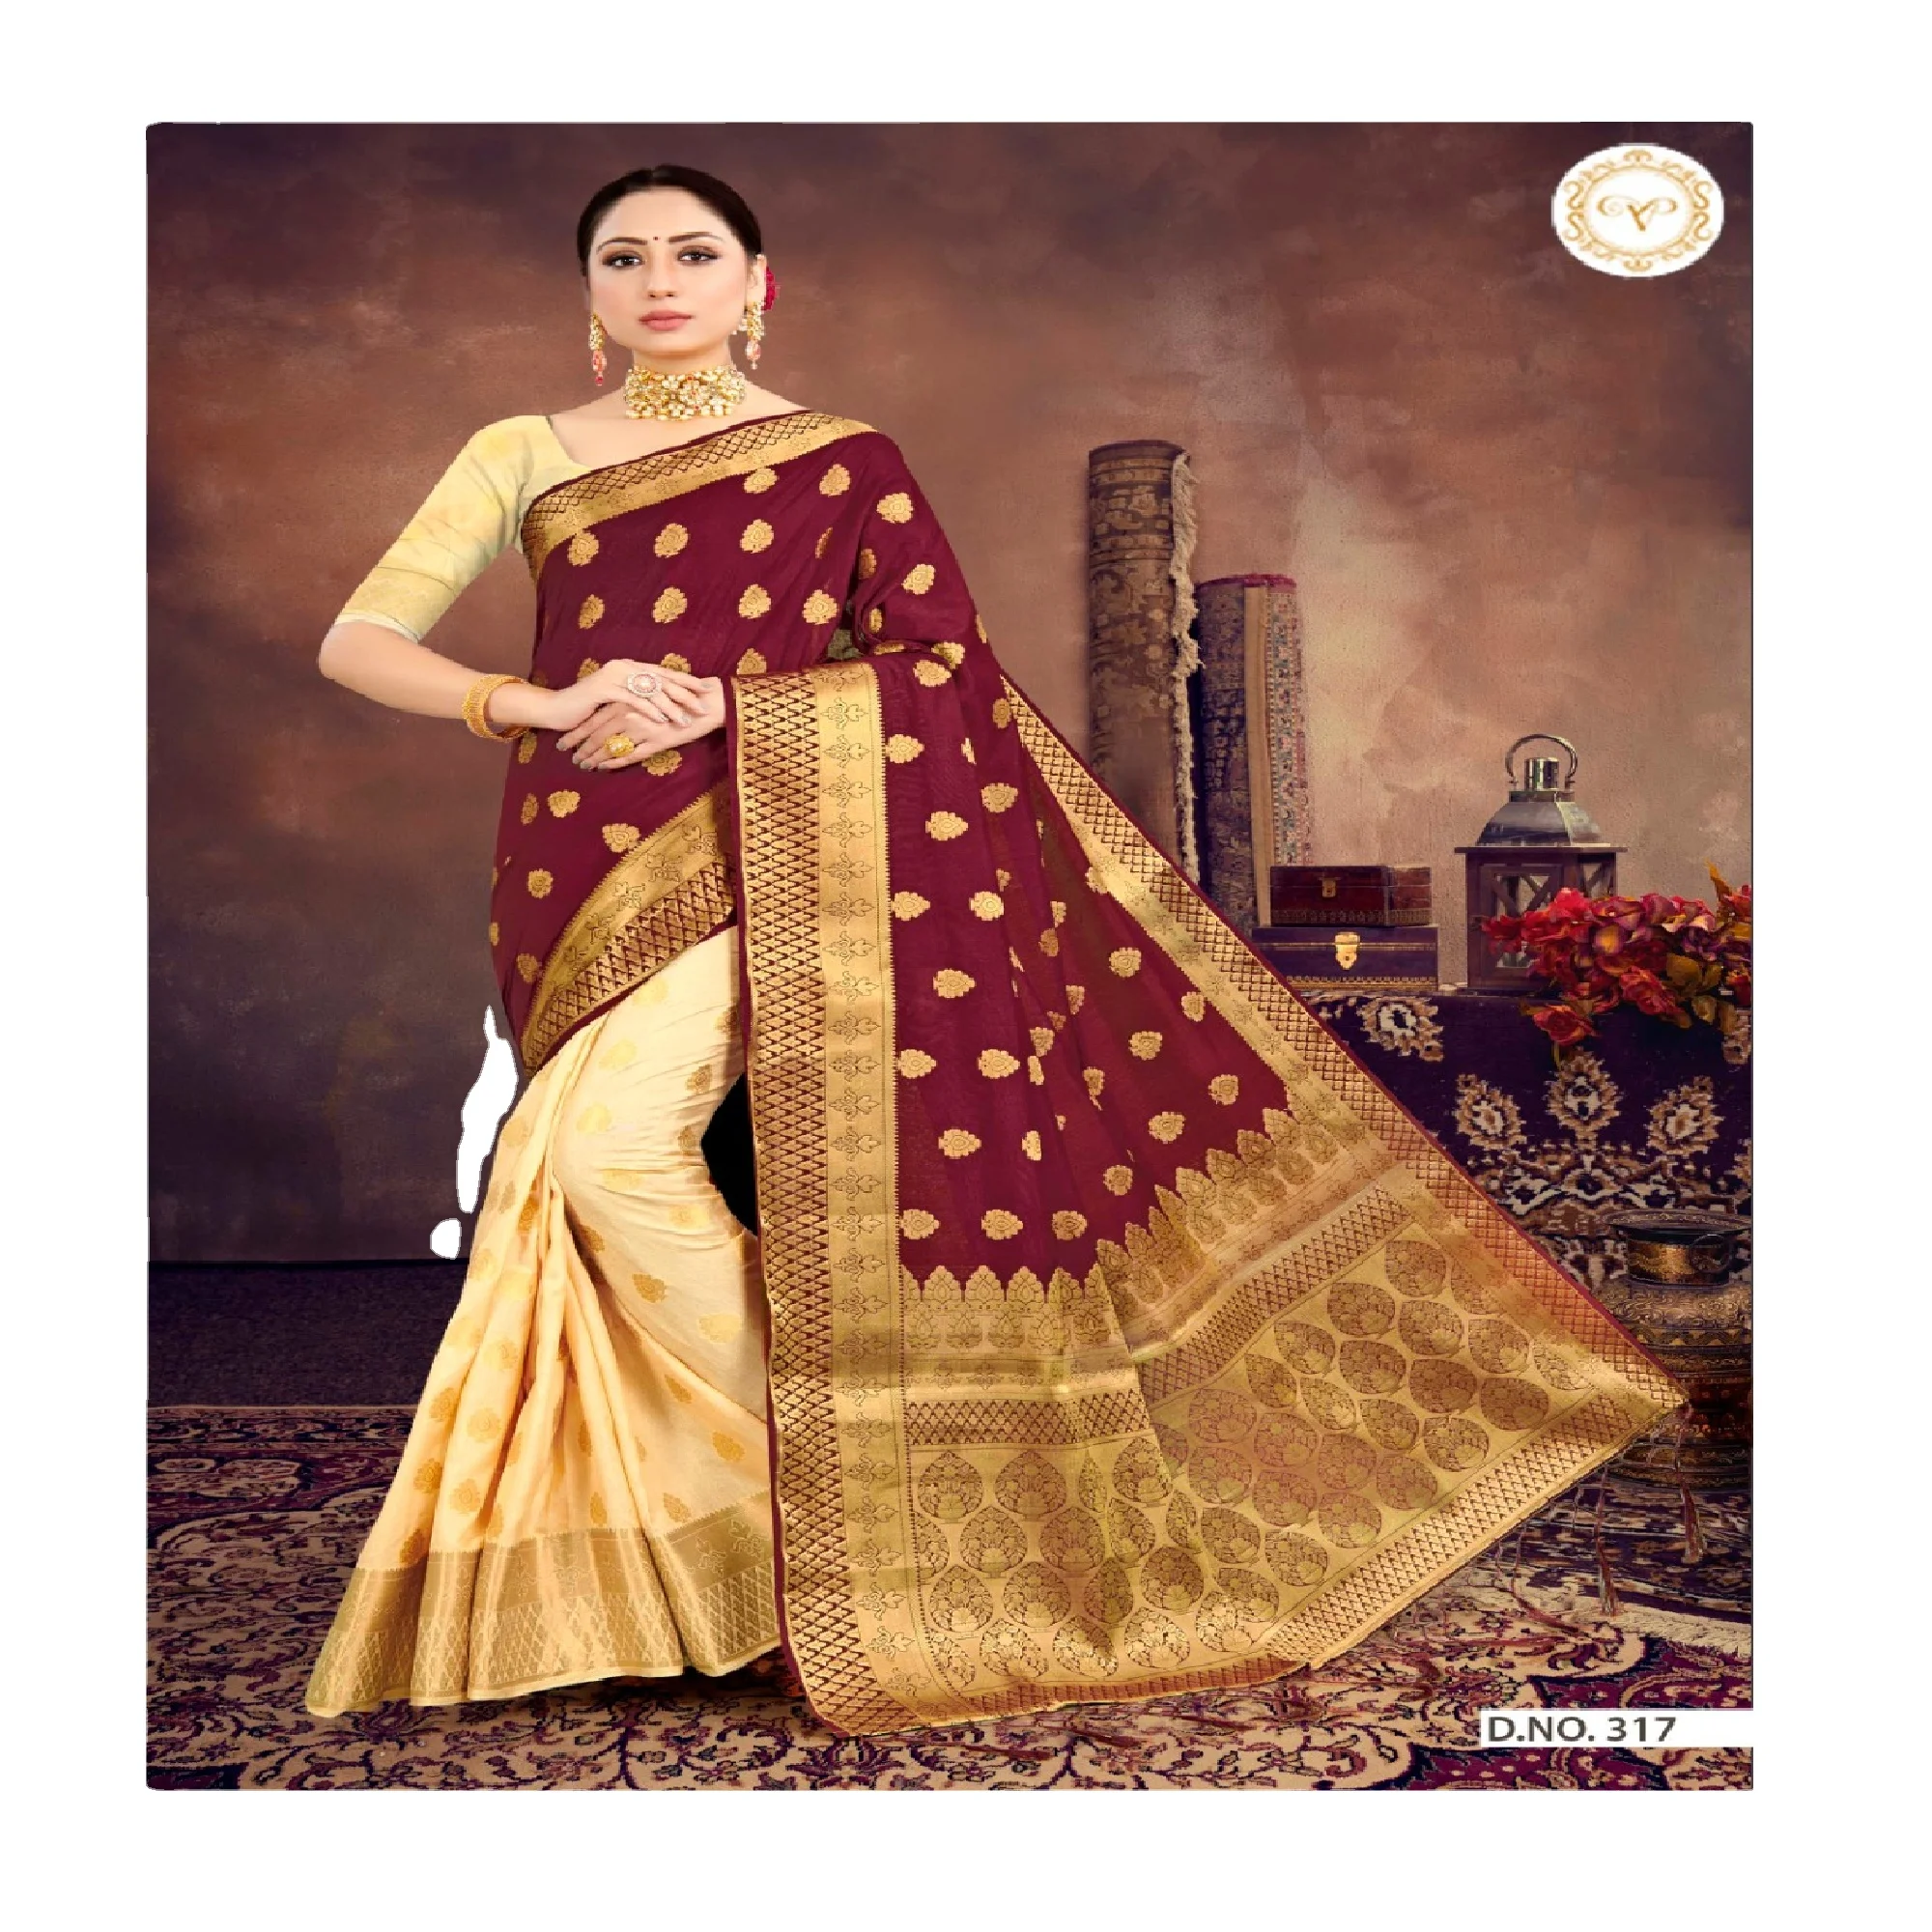 New Indian Designer Fancy Banarasi Silk Sari Ethnic Party Wear Top New Saree-sd 